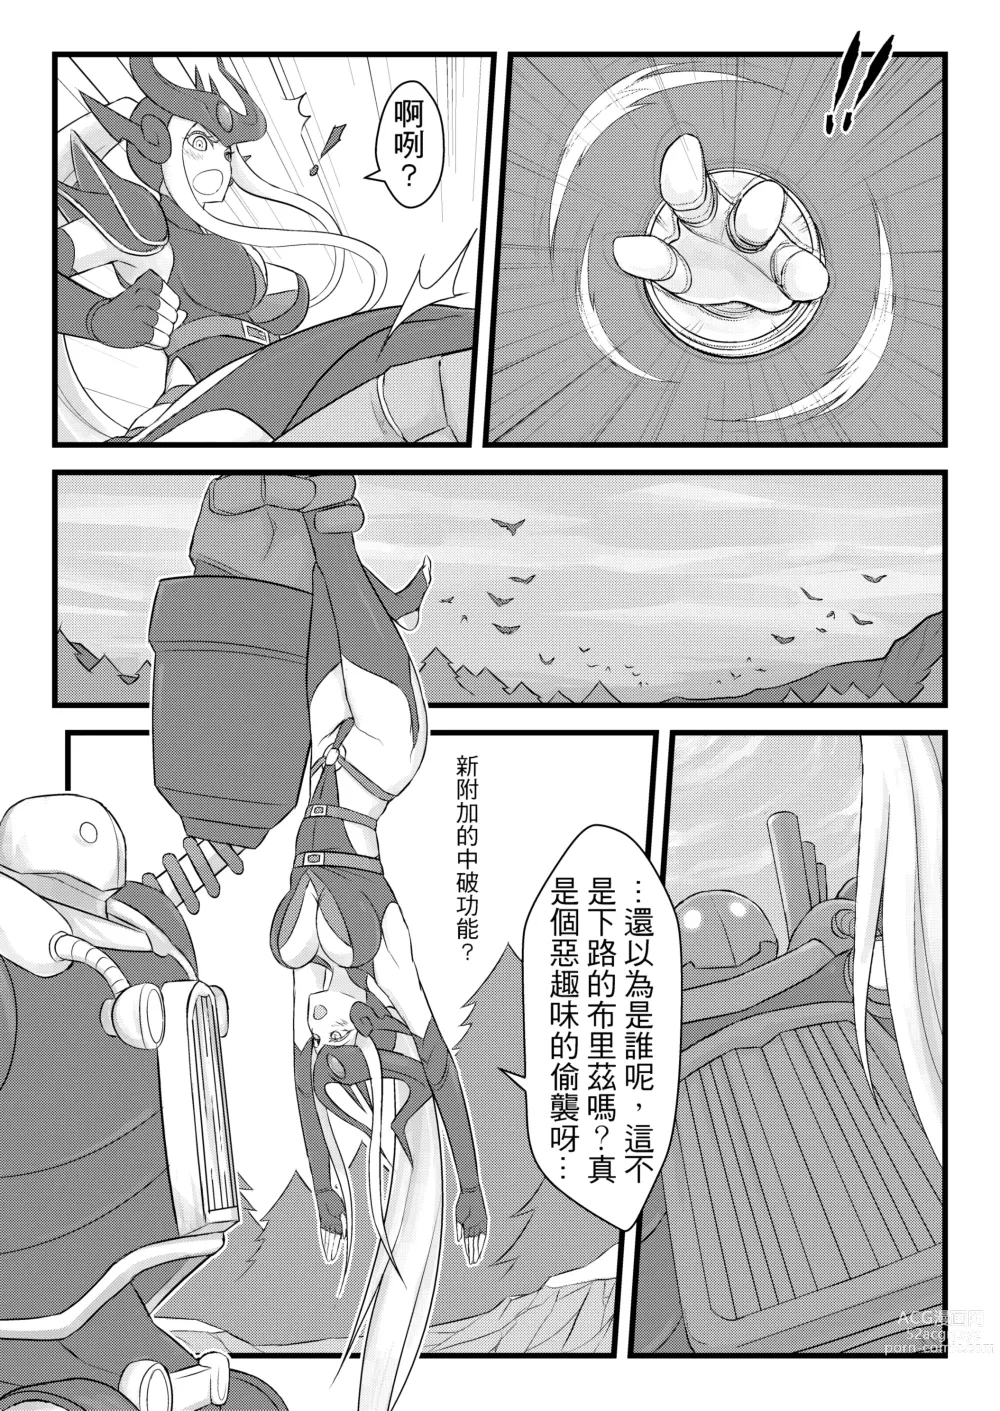 Page 5 of doujinshi ININ Renmei (uncensored)